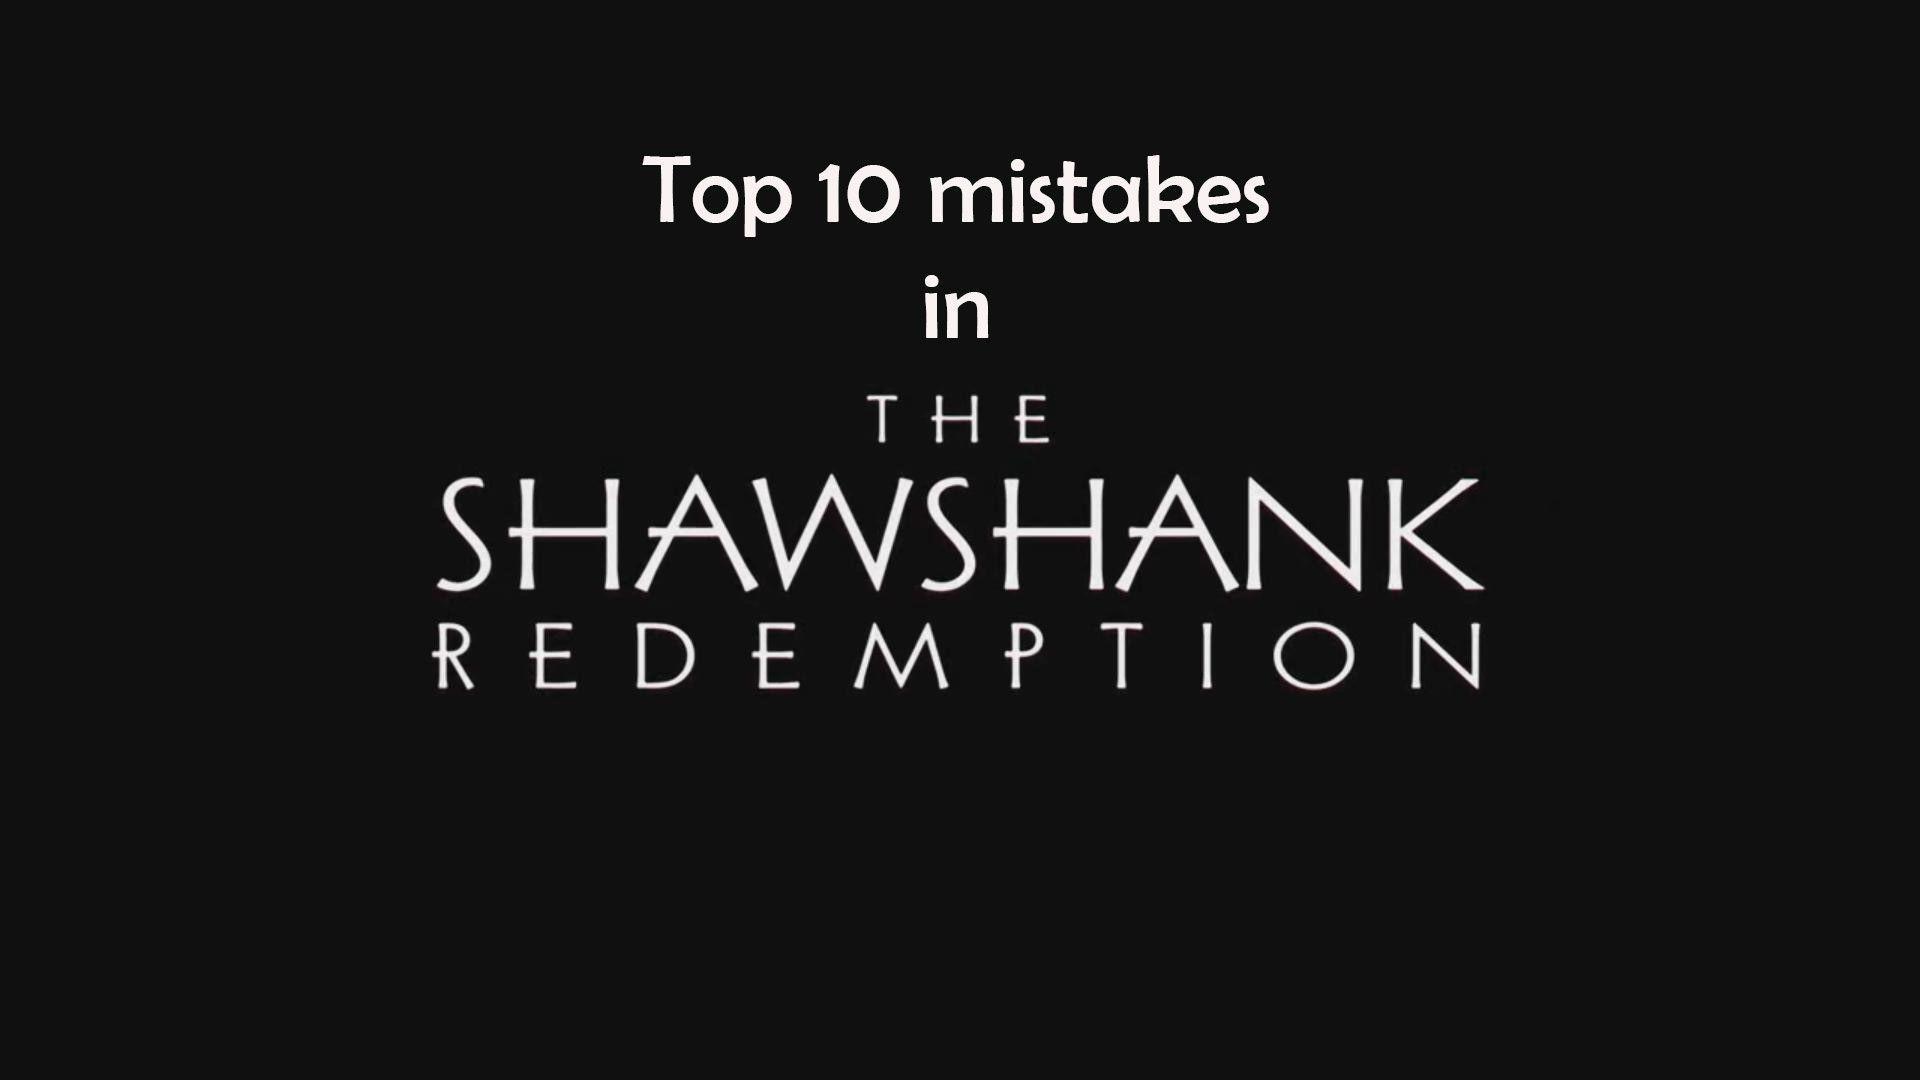 4K mistakes in The Shawshank Redemption